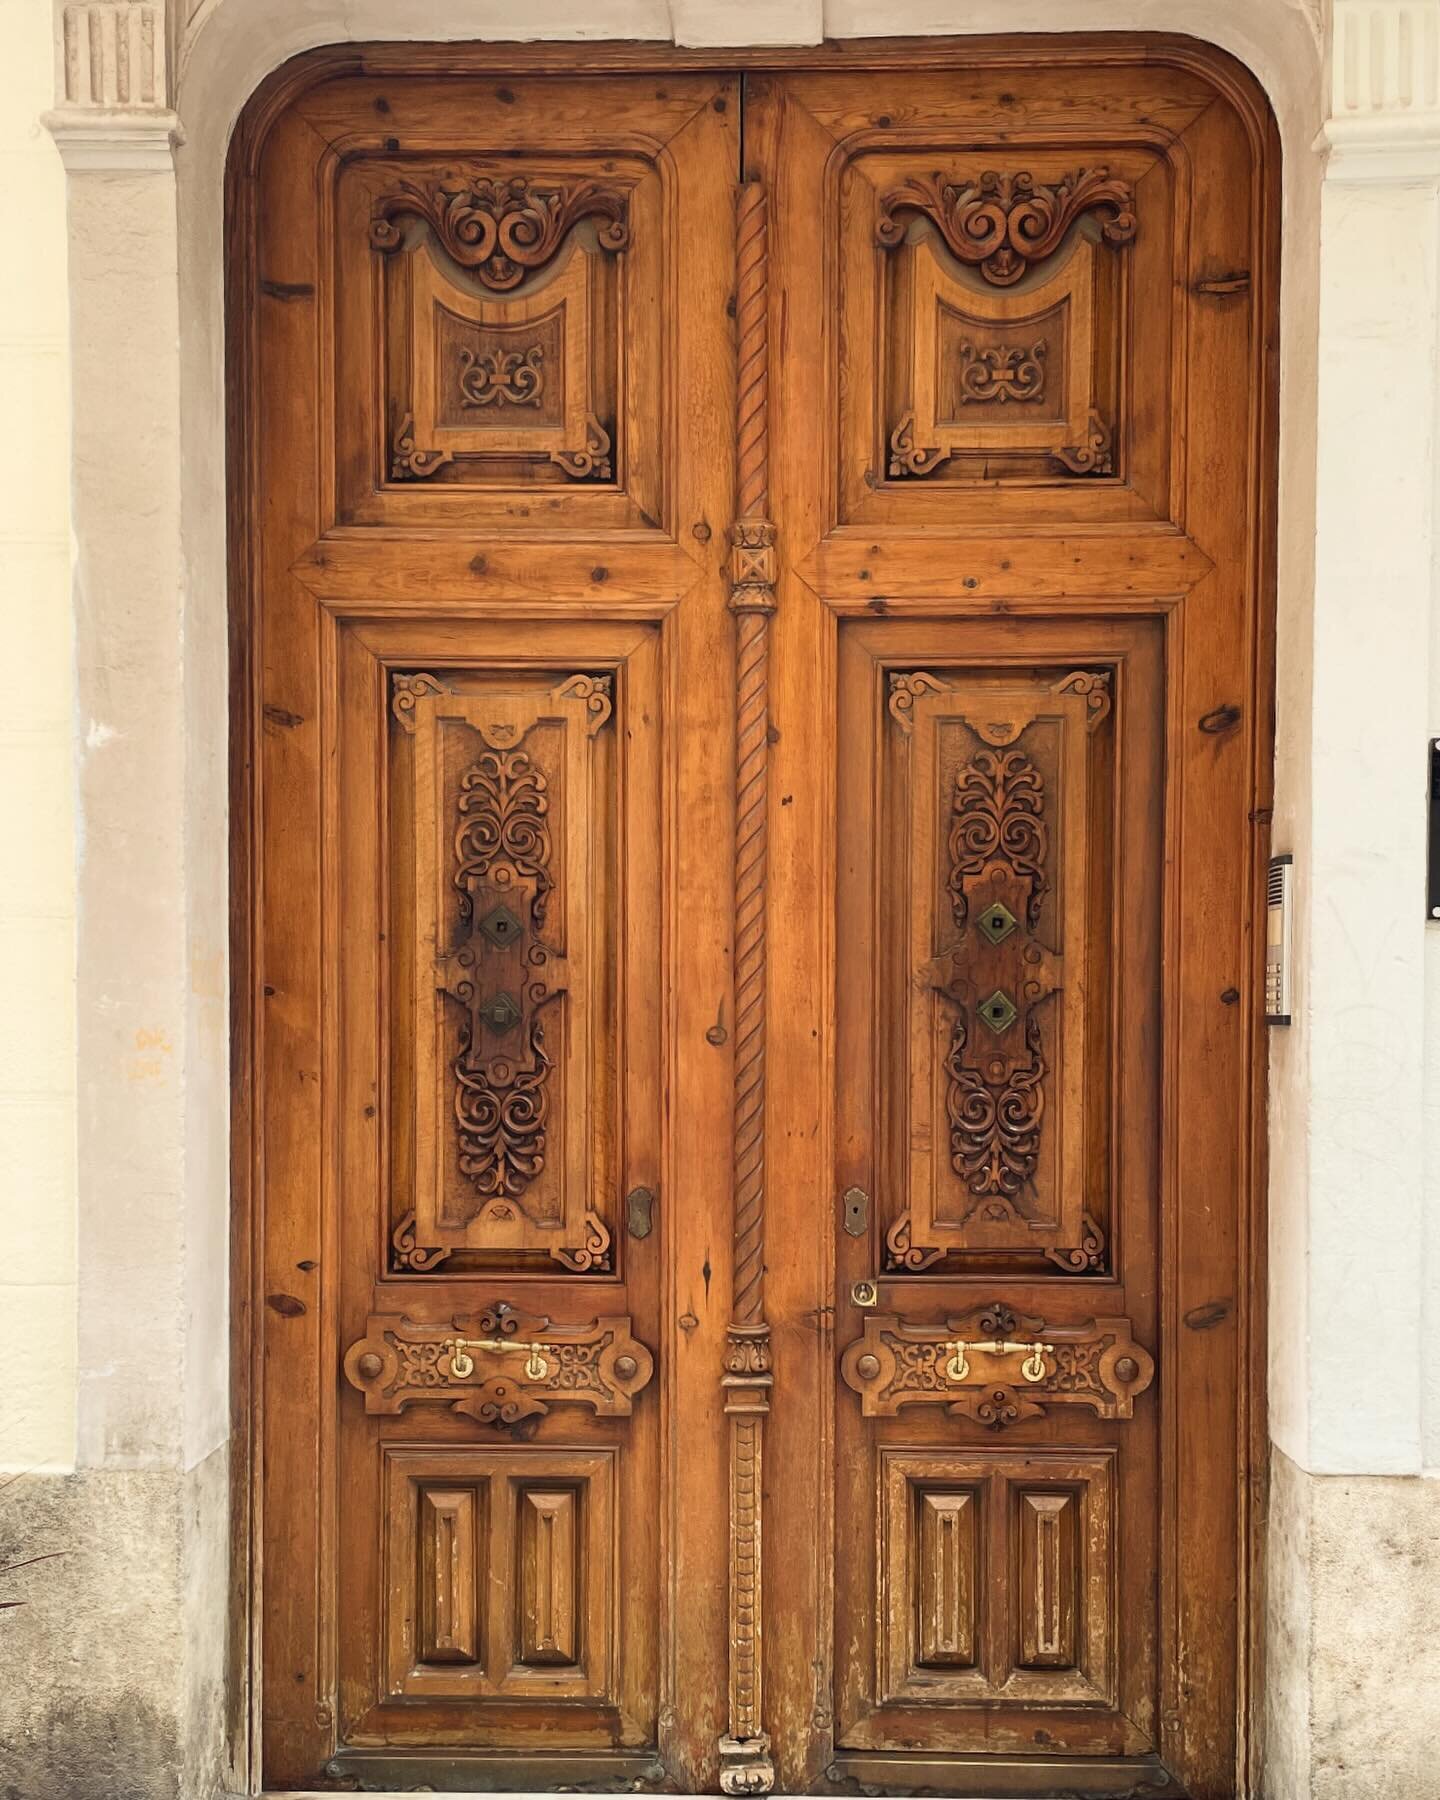 Doors of Valencia.
Catalan Architecute